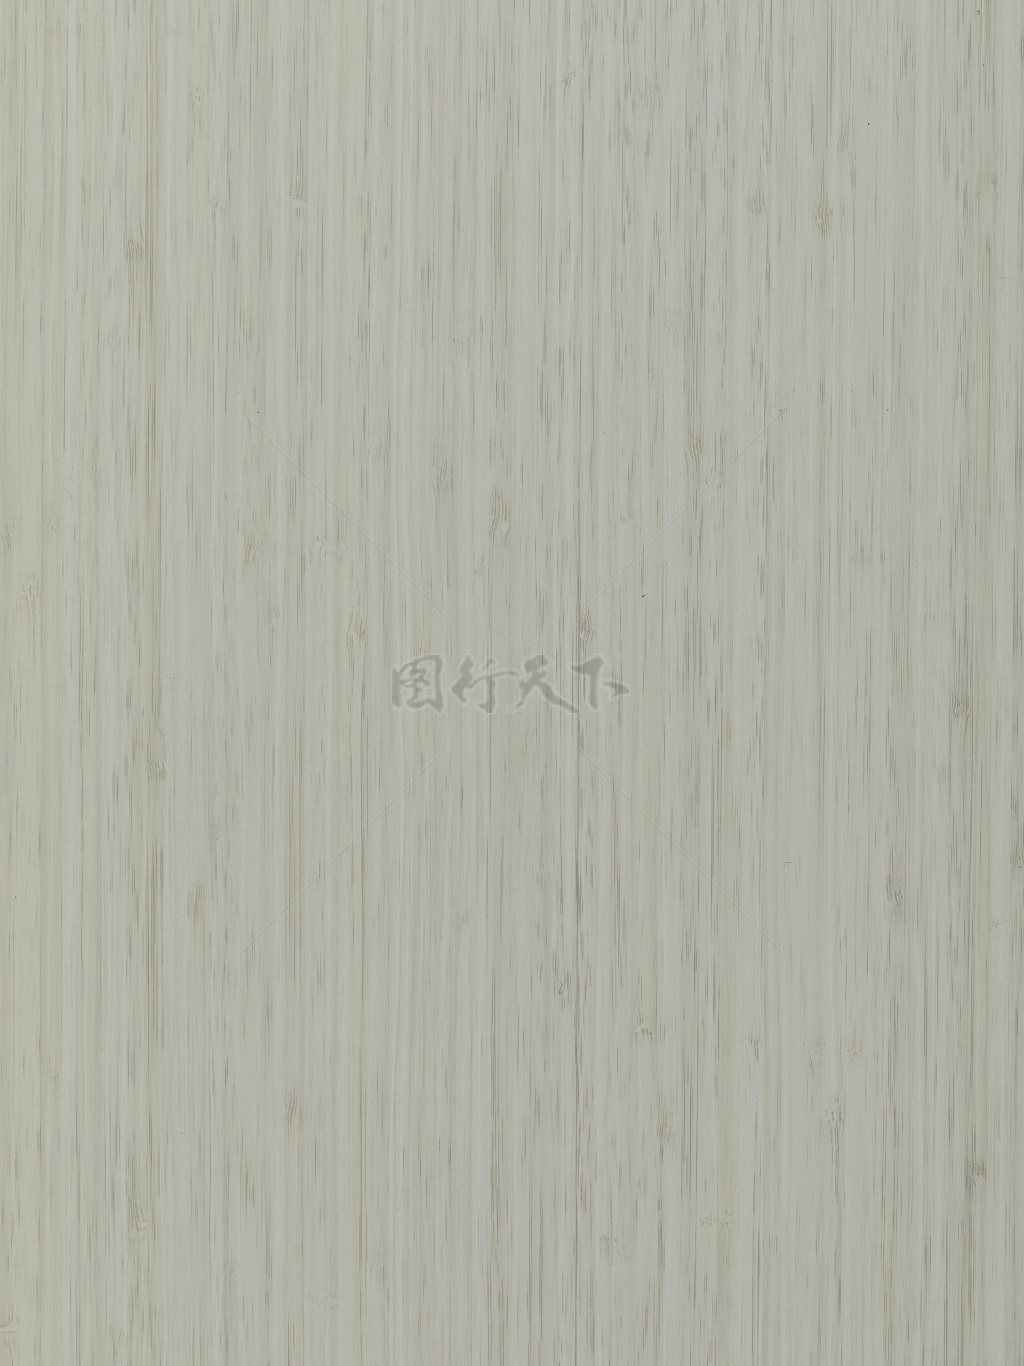 竹木密拼木纹纹理背景图案贴图灰白木纹